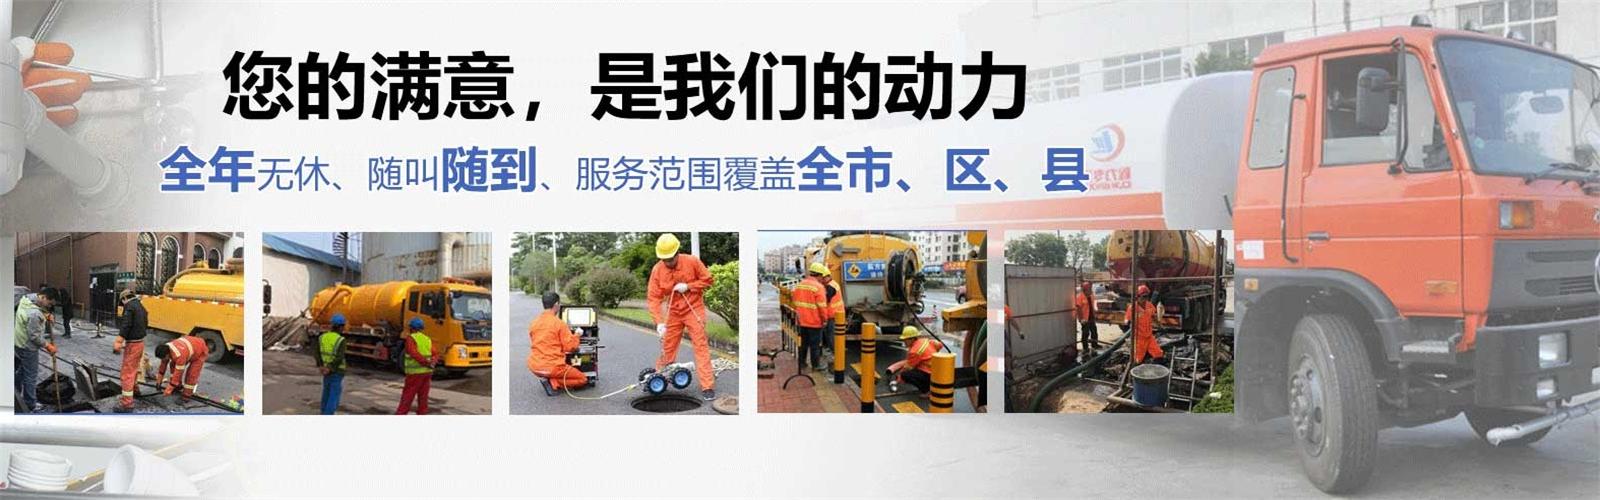 长海县疏通清洗下水道